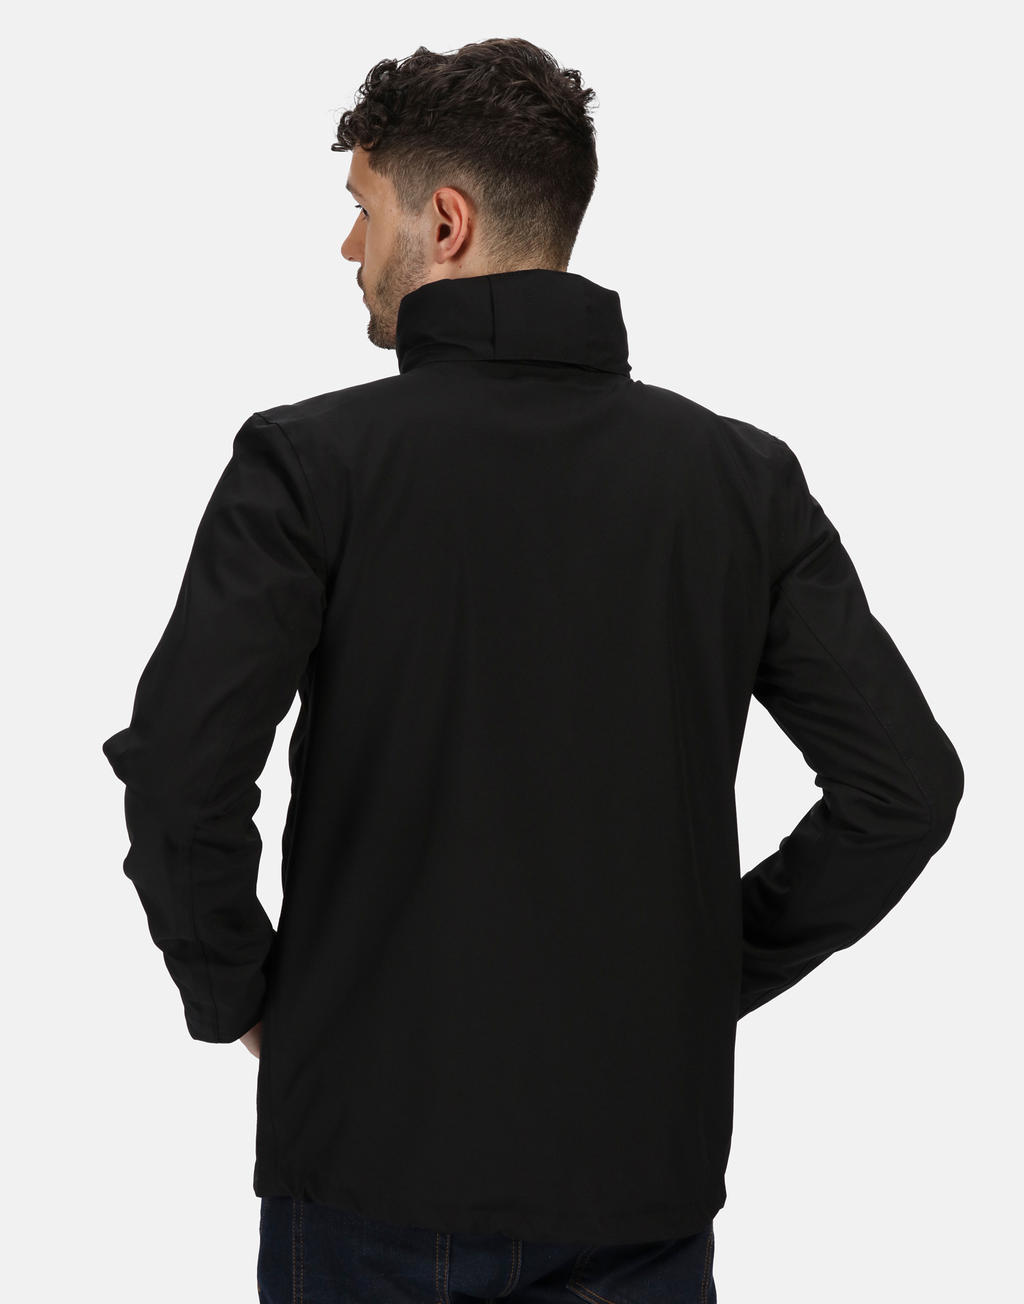  Kingsley 3-in-1 Jacket in Farbe Black/Black